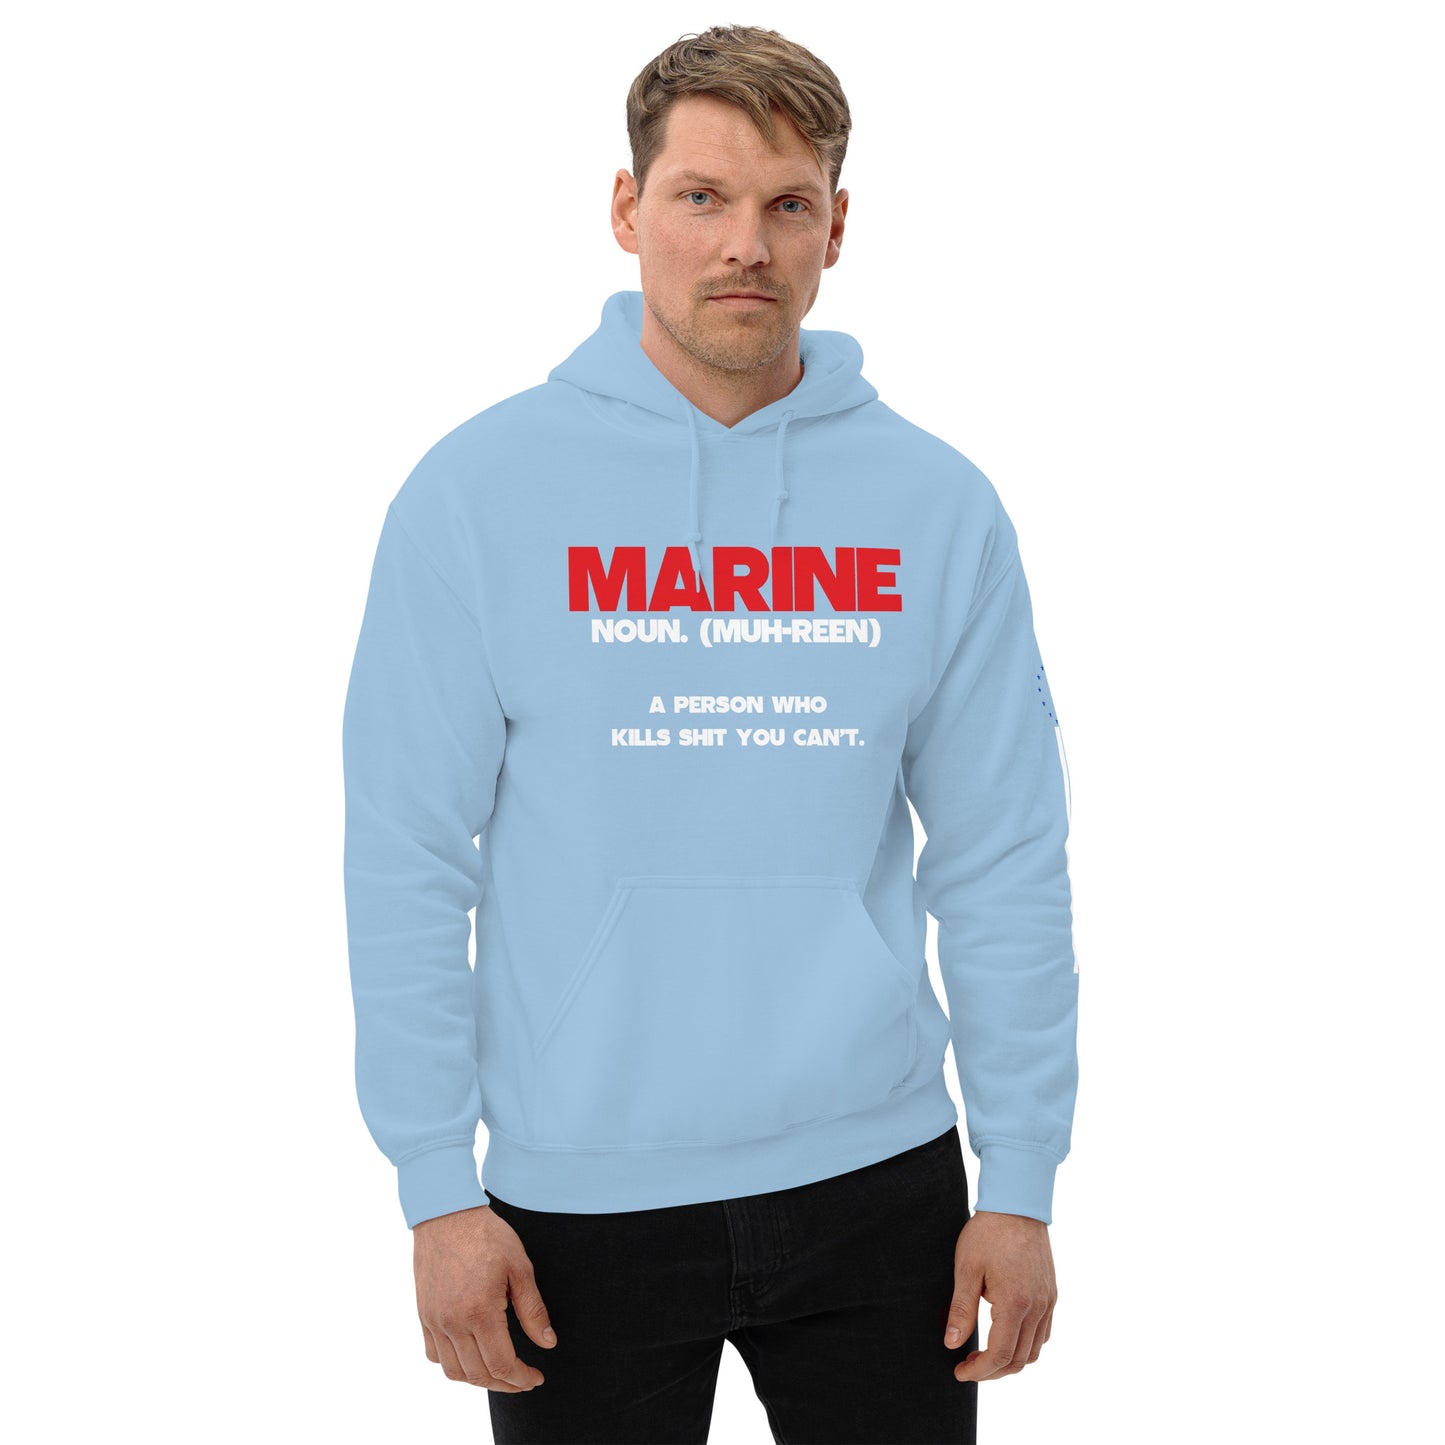 Marine definition Unisex Hoodie